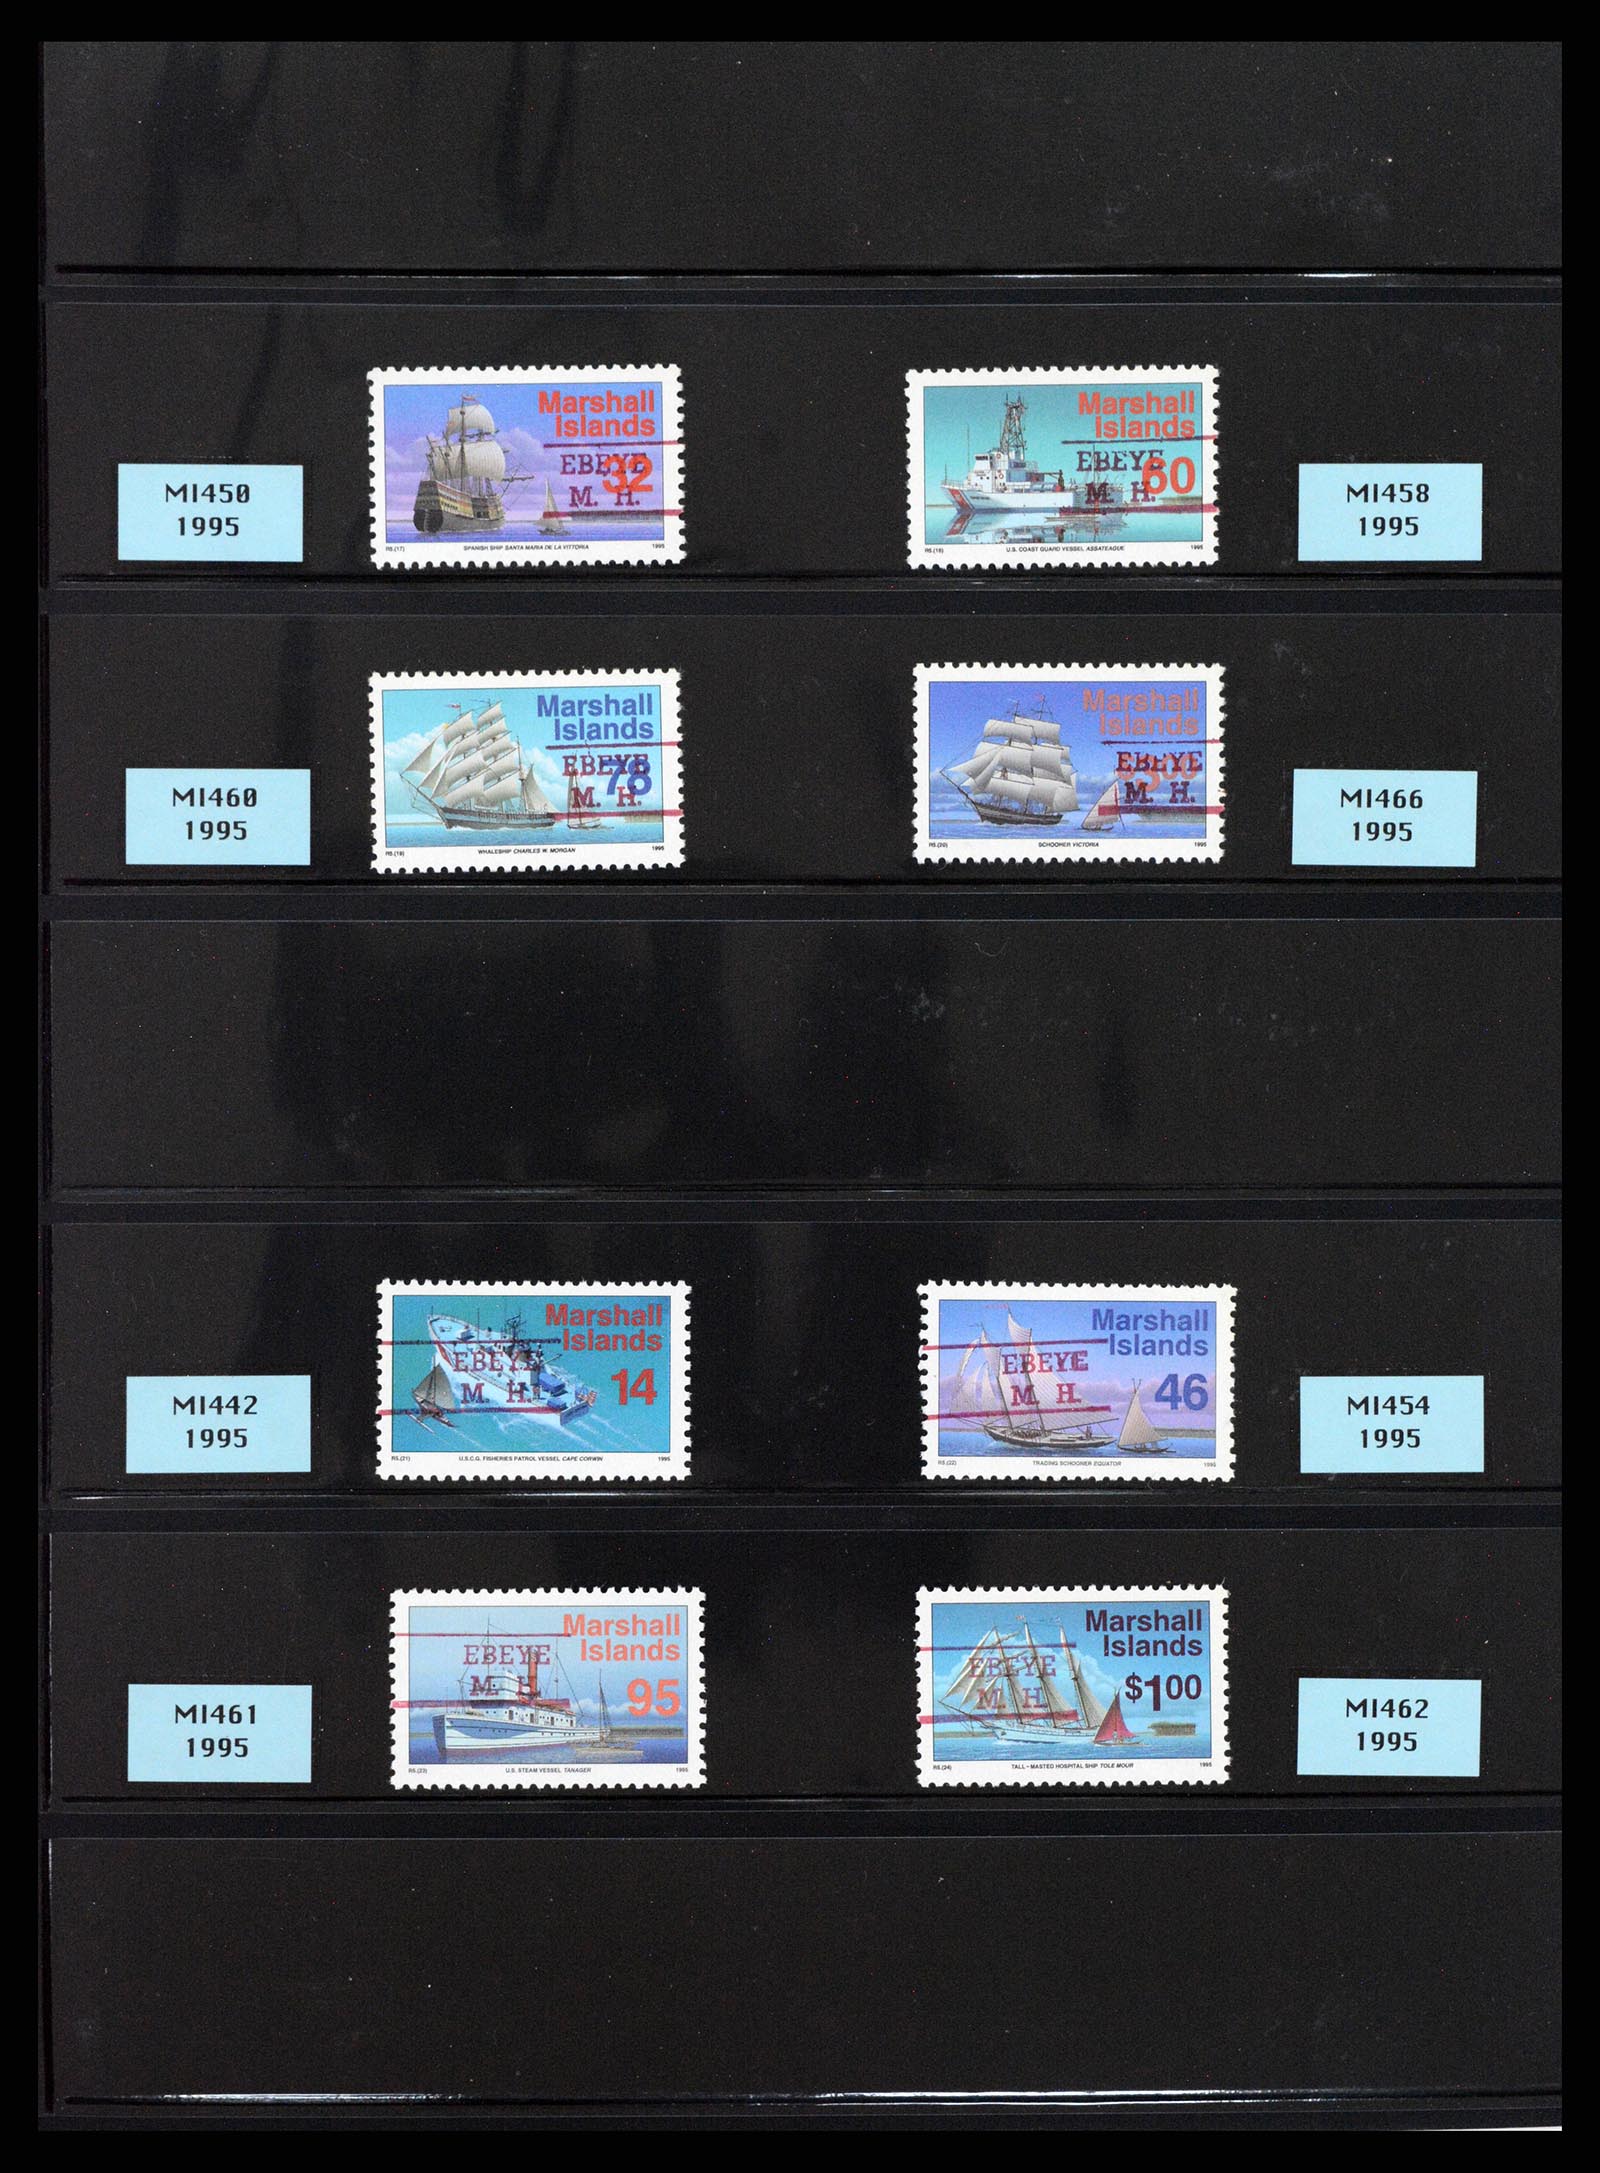 37736 006 - Postzegelverzameling 37736 USA gebieden pre-cancels 1959-1995.